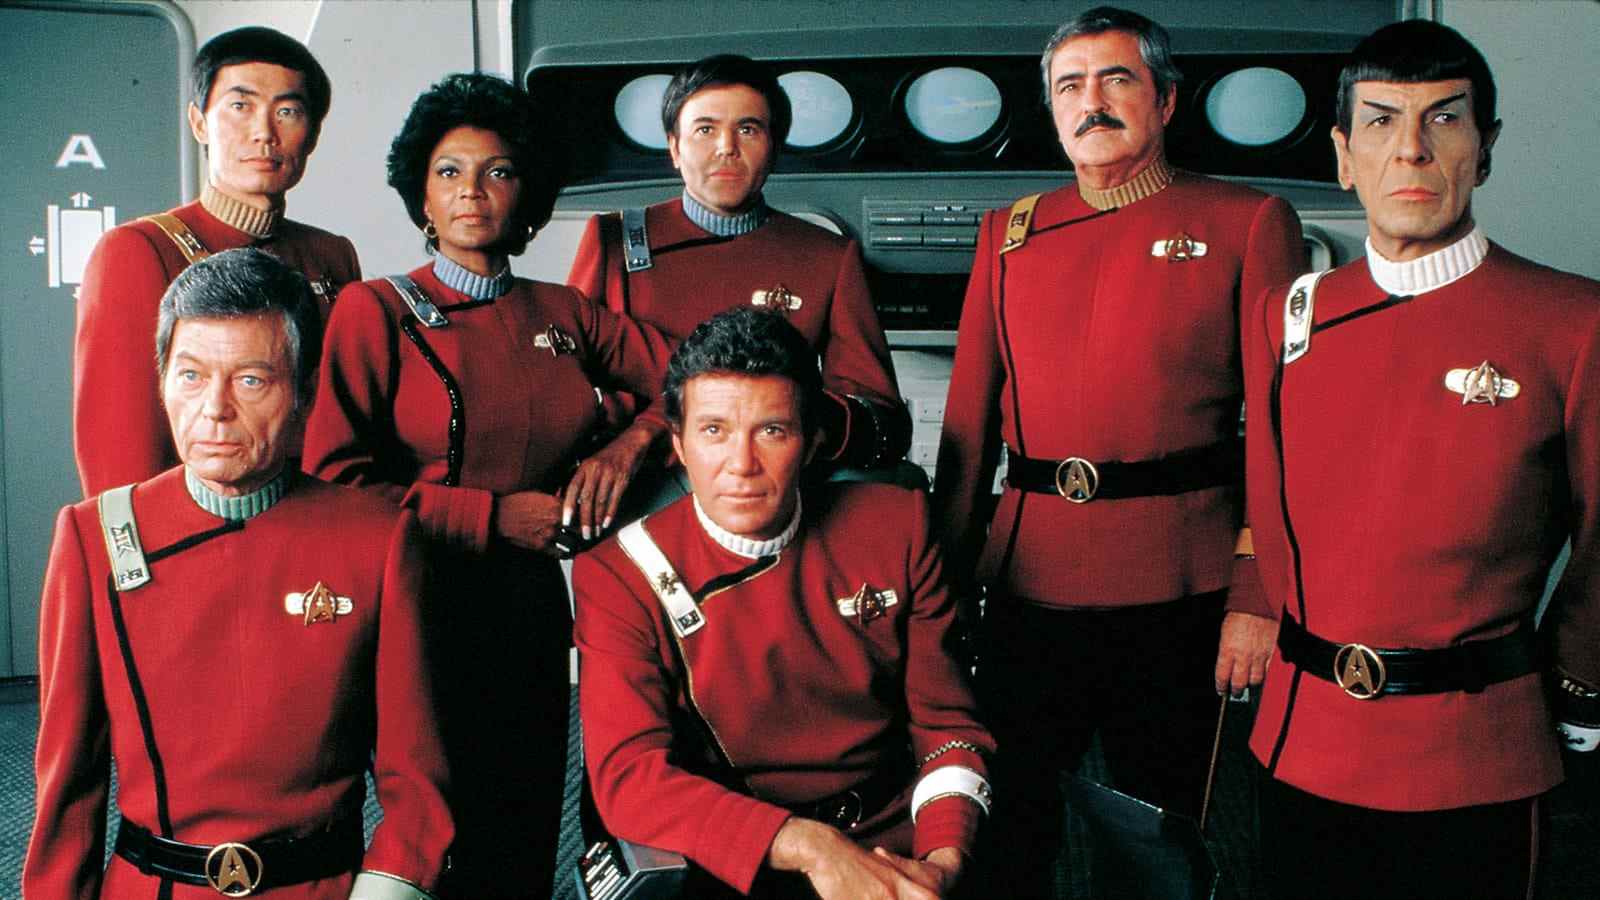 Le 40e anniversaire de Star Trek II: The Wrath of Khan a fait face à un contrecoup des fans à sa sortie, à un conflit avec Gene Rodenberry à propos du scénario et à la mort de Spock